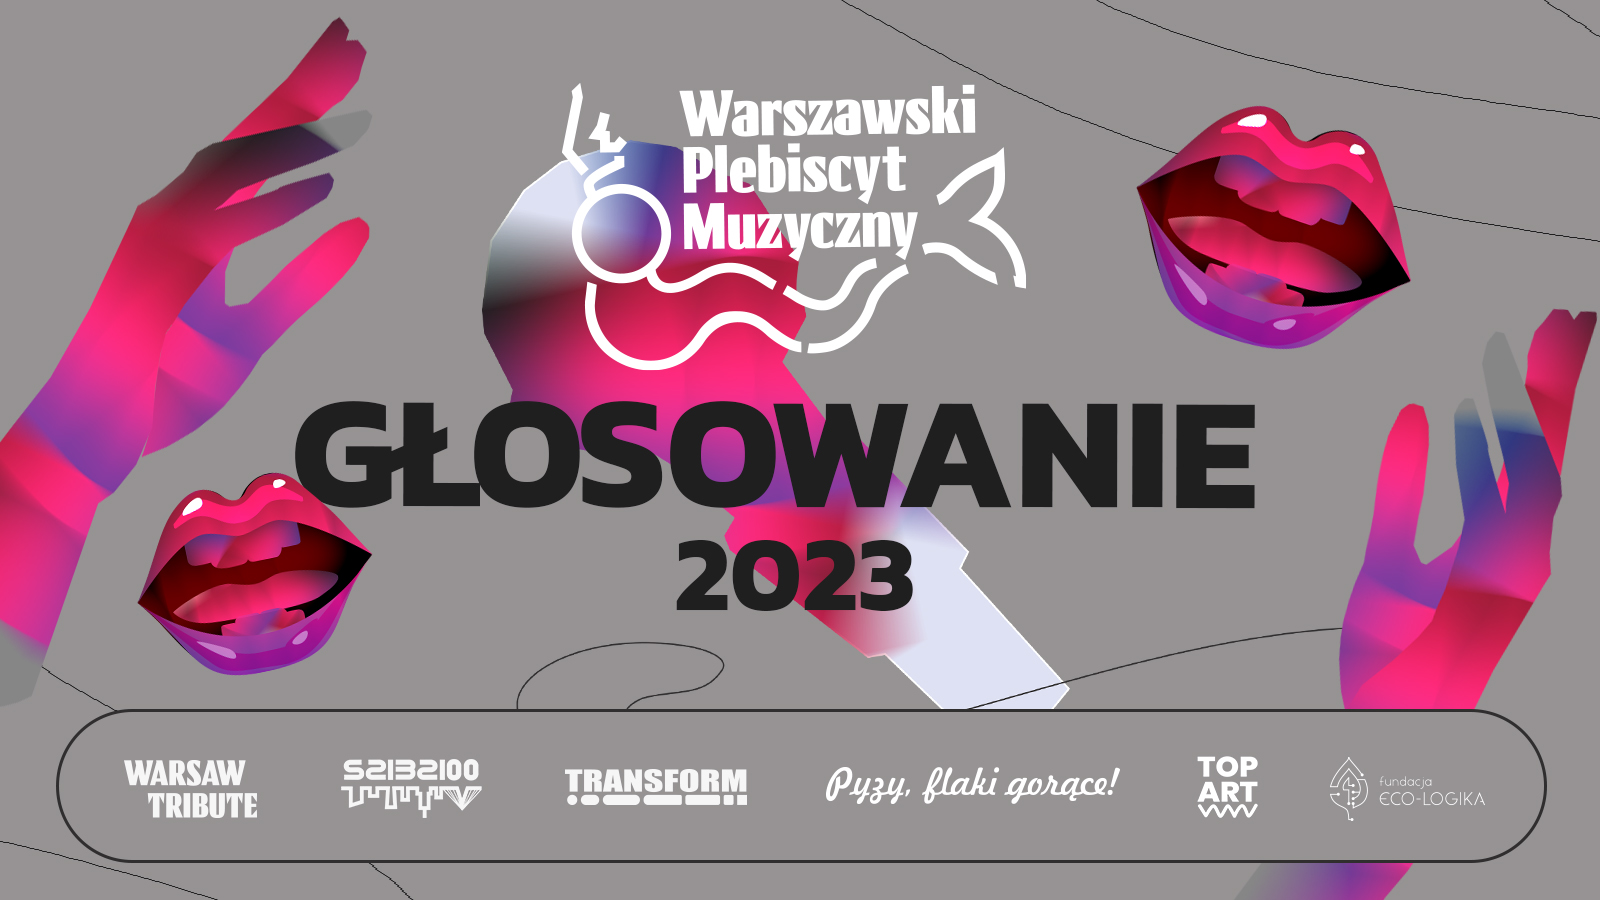 Warszwski Plebiscyt Muzyczny 2023 - start głosowania 1